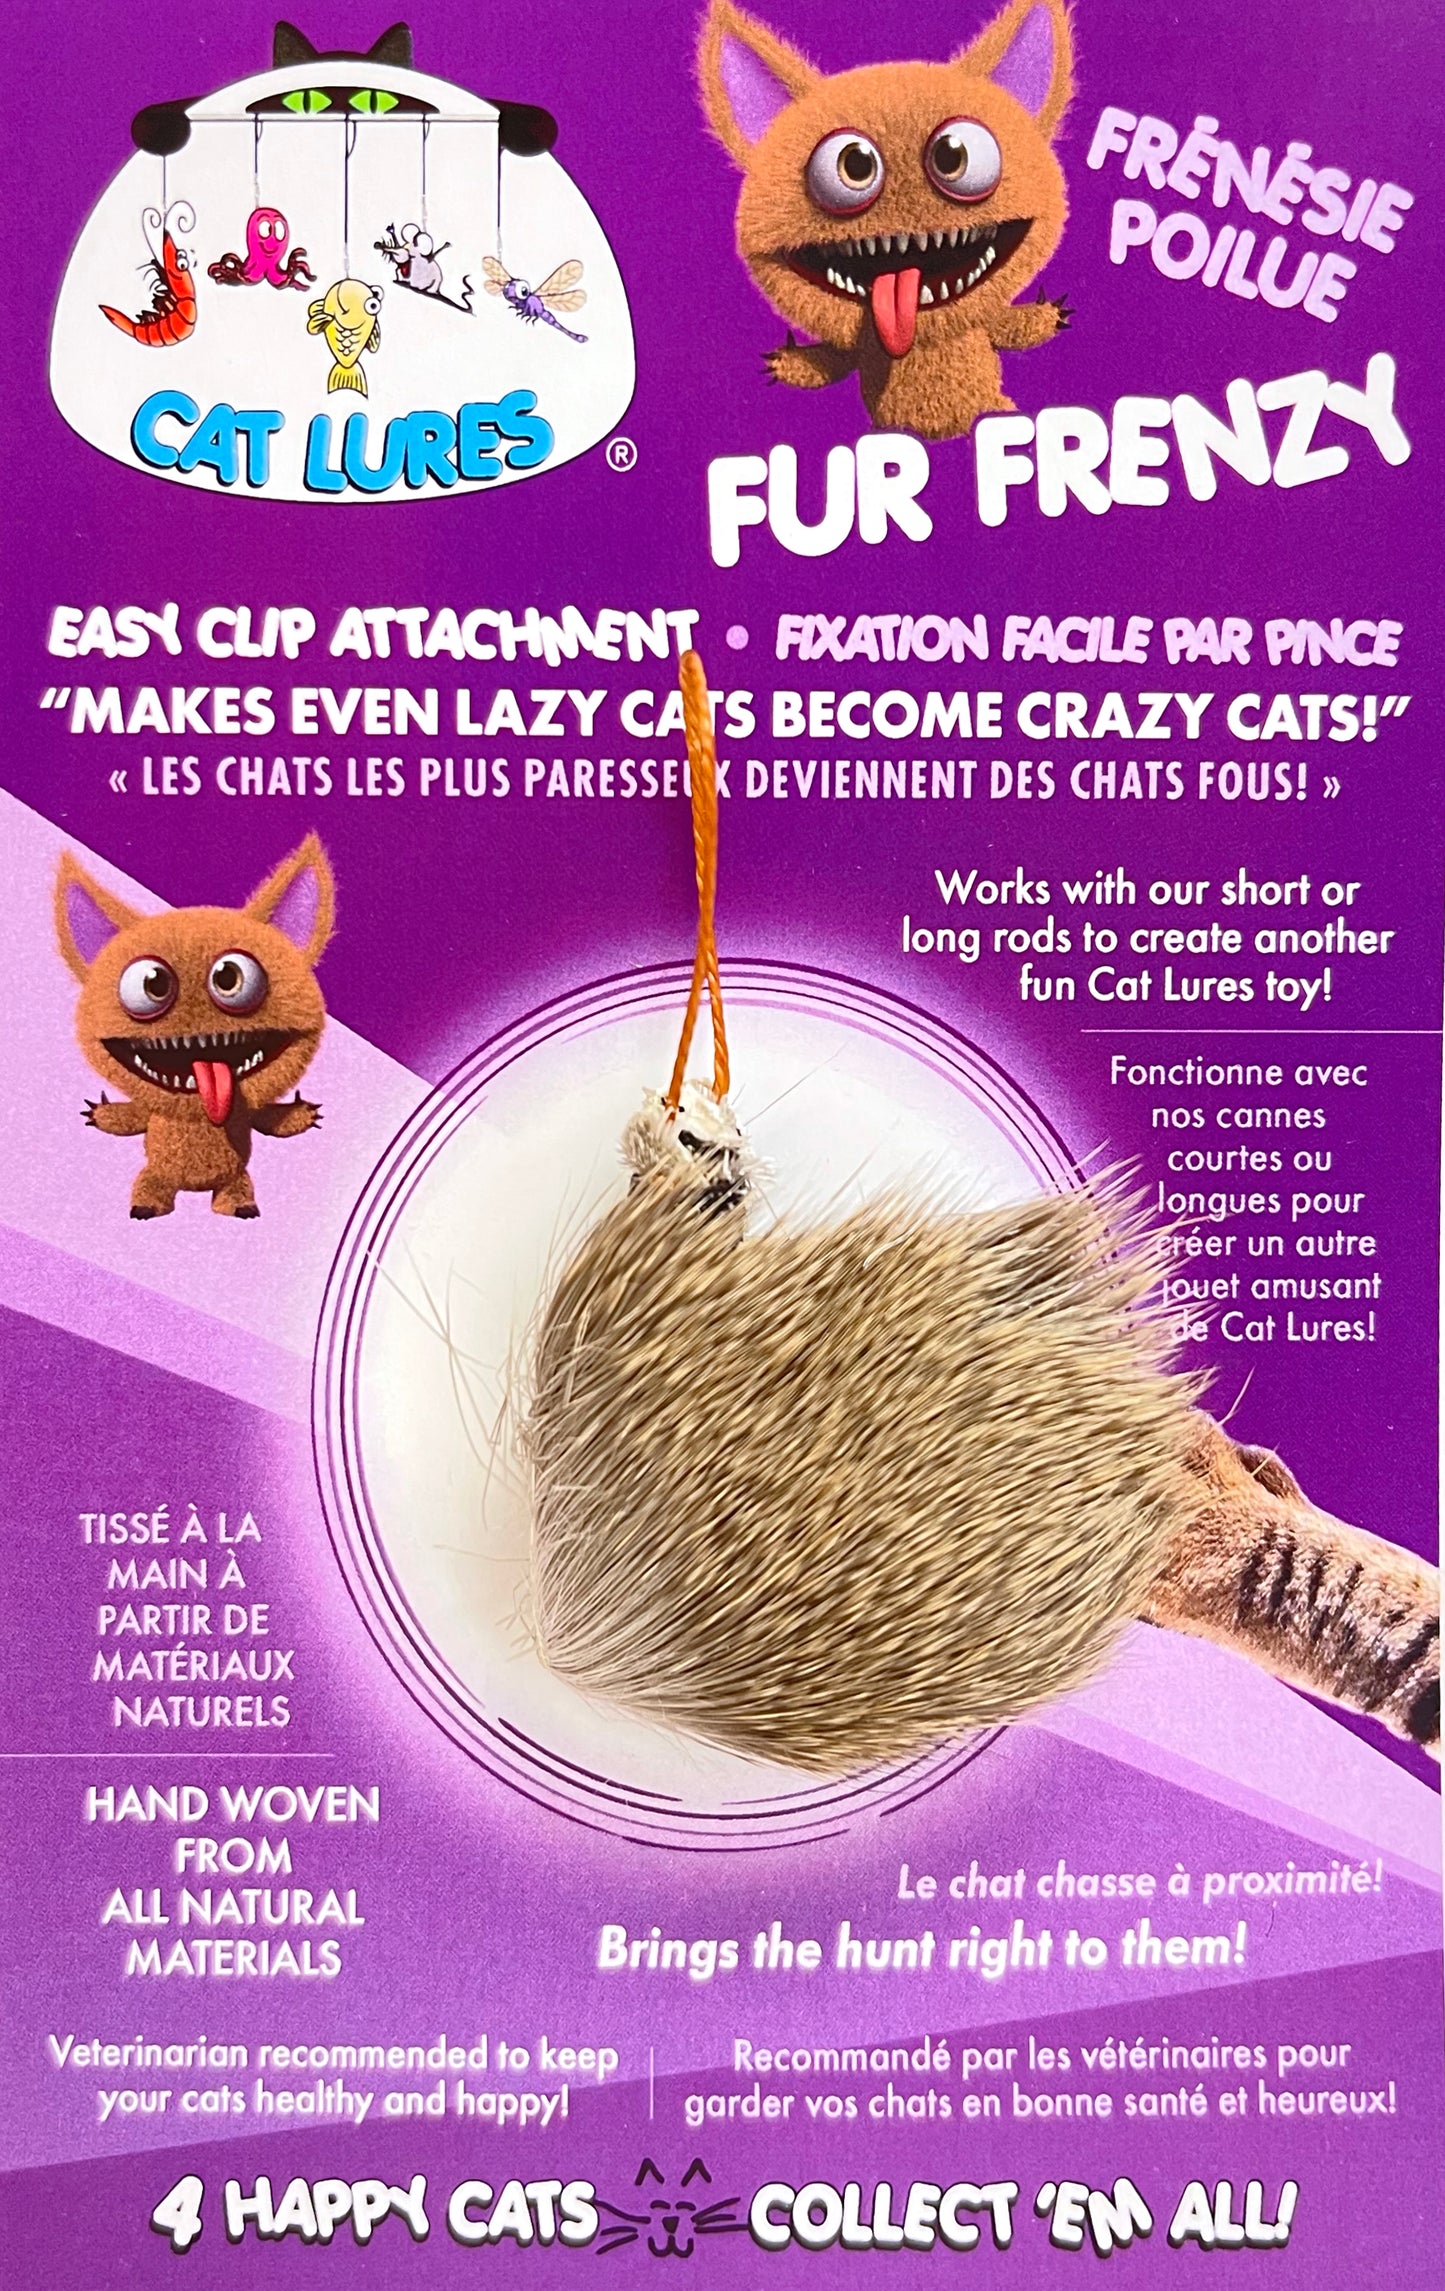 Fur Frenzy